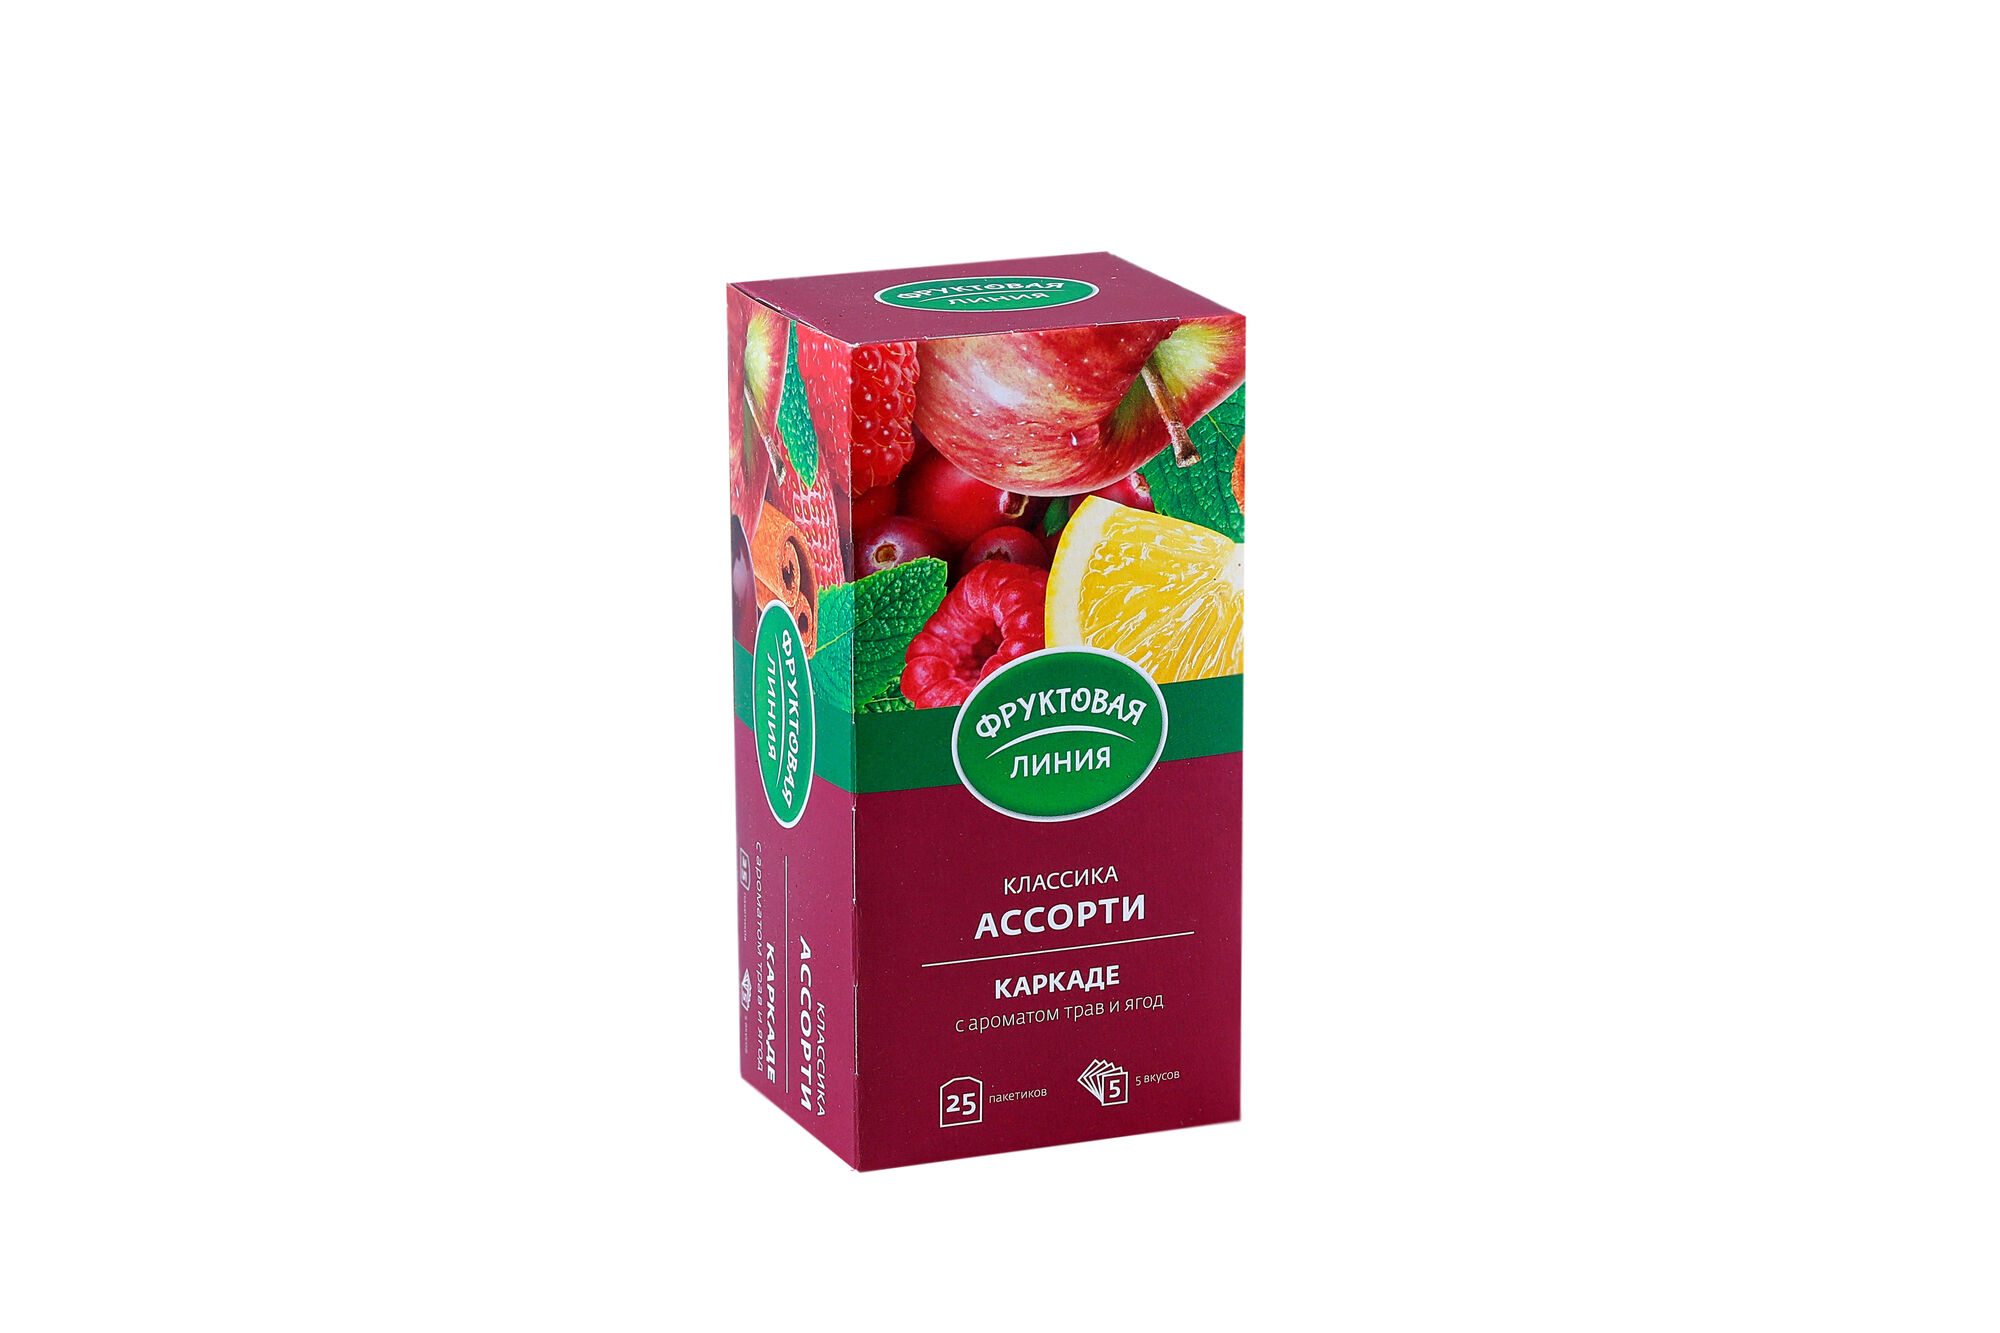 Чай фруктовая линия Ассорти каркаде 25х1,5 г (в коробке 24 шт)